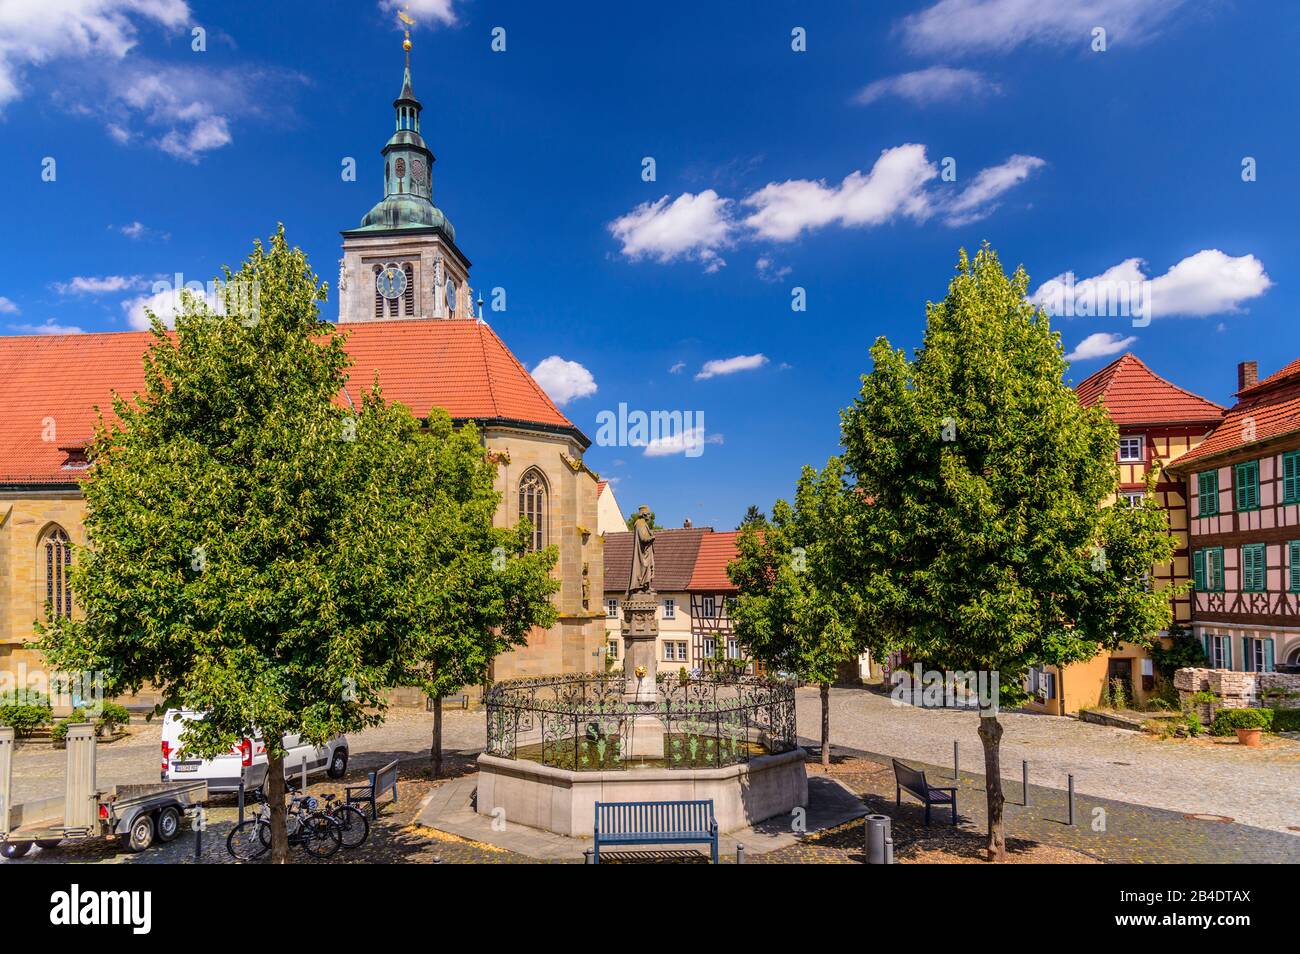 Deutschland, Bayern, Unterfranken, Haßberge, Königsberg in Bayern, Marktplatz, Marienkirche mit Regiomontanus Brunnen Stock Photo